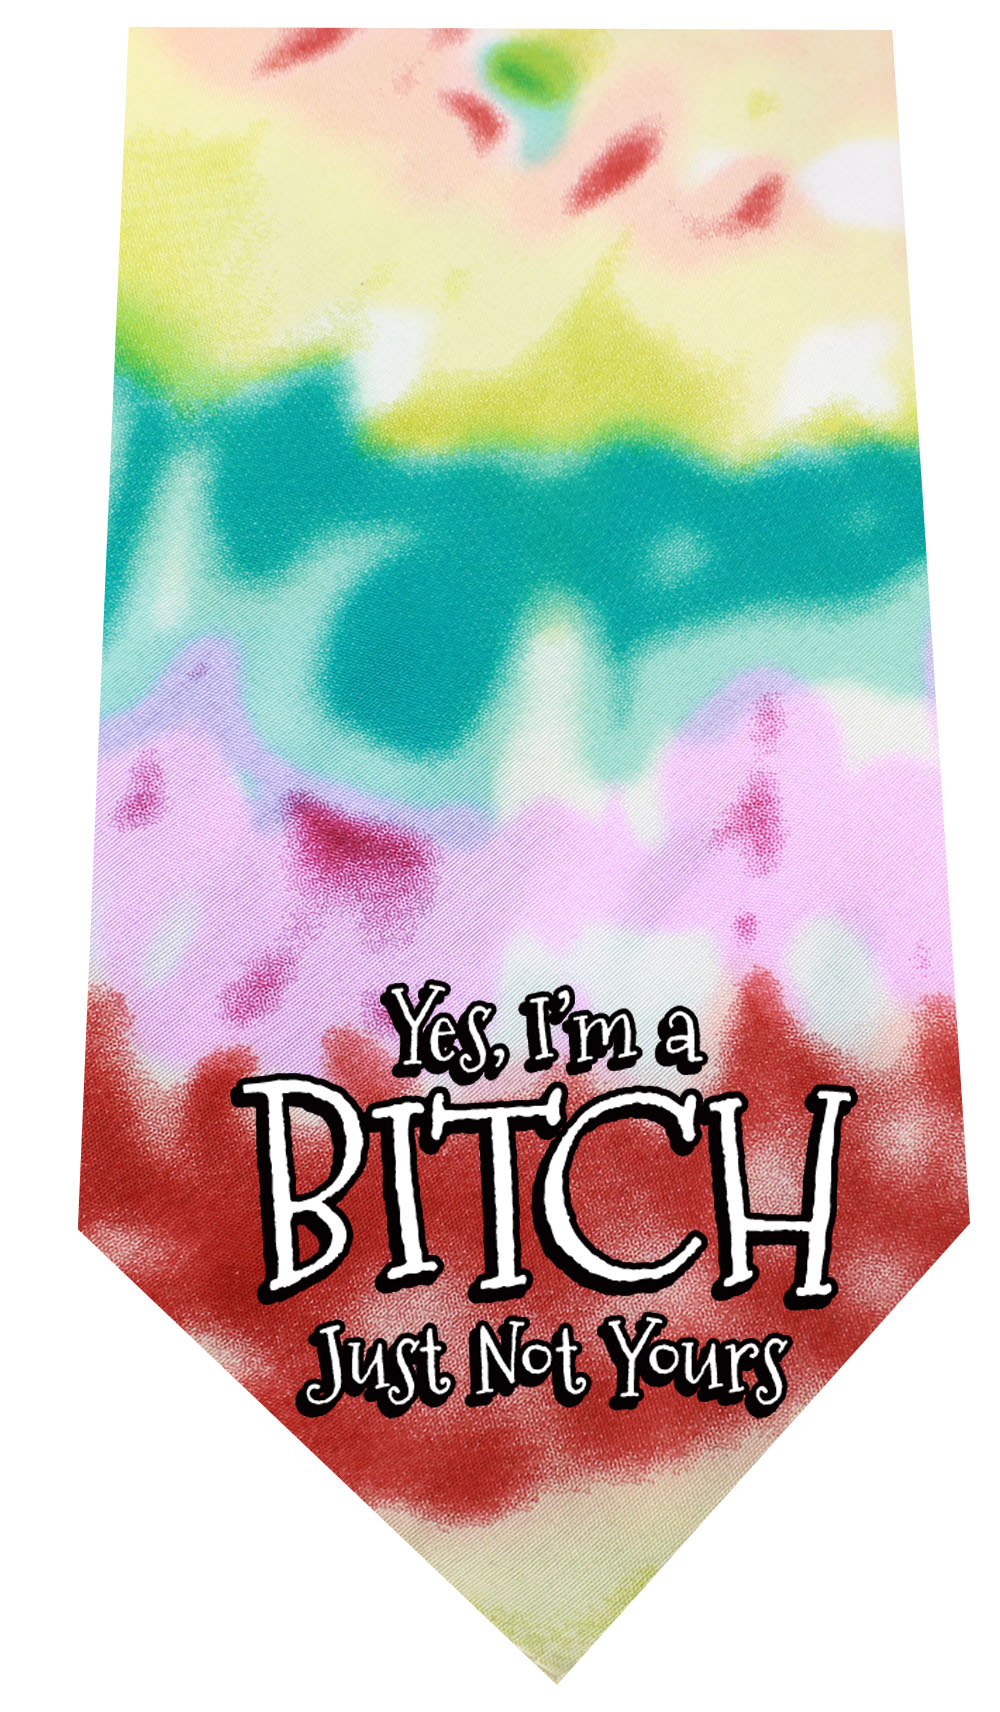 Yes I'm a Bitch Screen Print Bandana Tie Dye